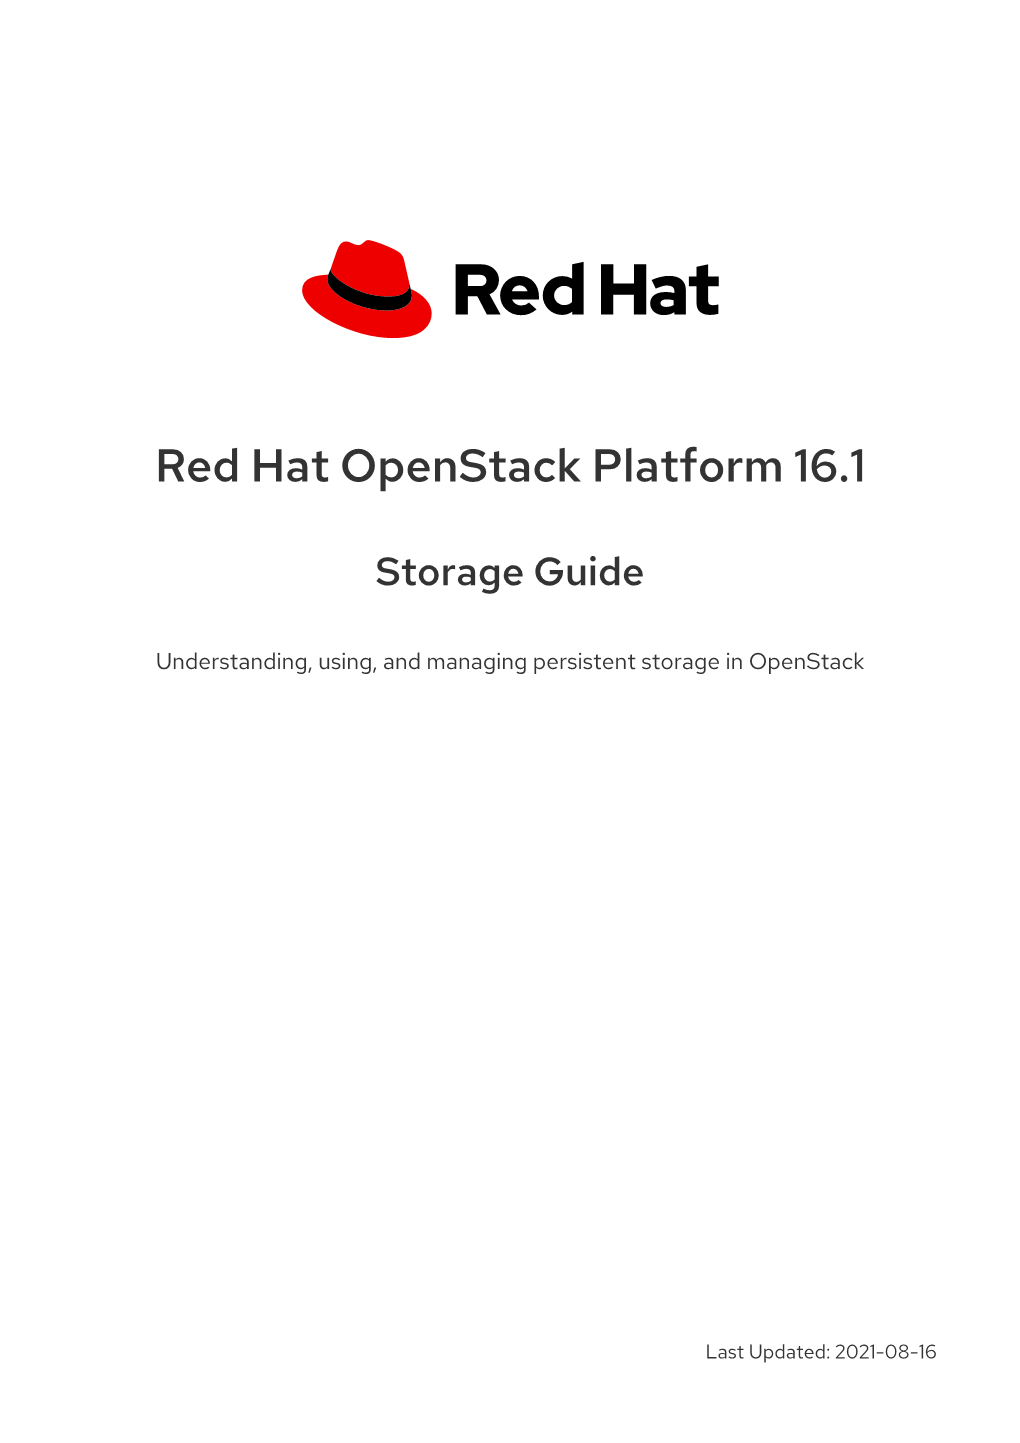 Red Hat Openstack Platform 16.1 Storage Guide